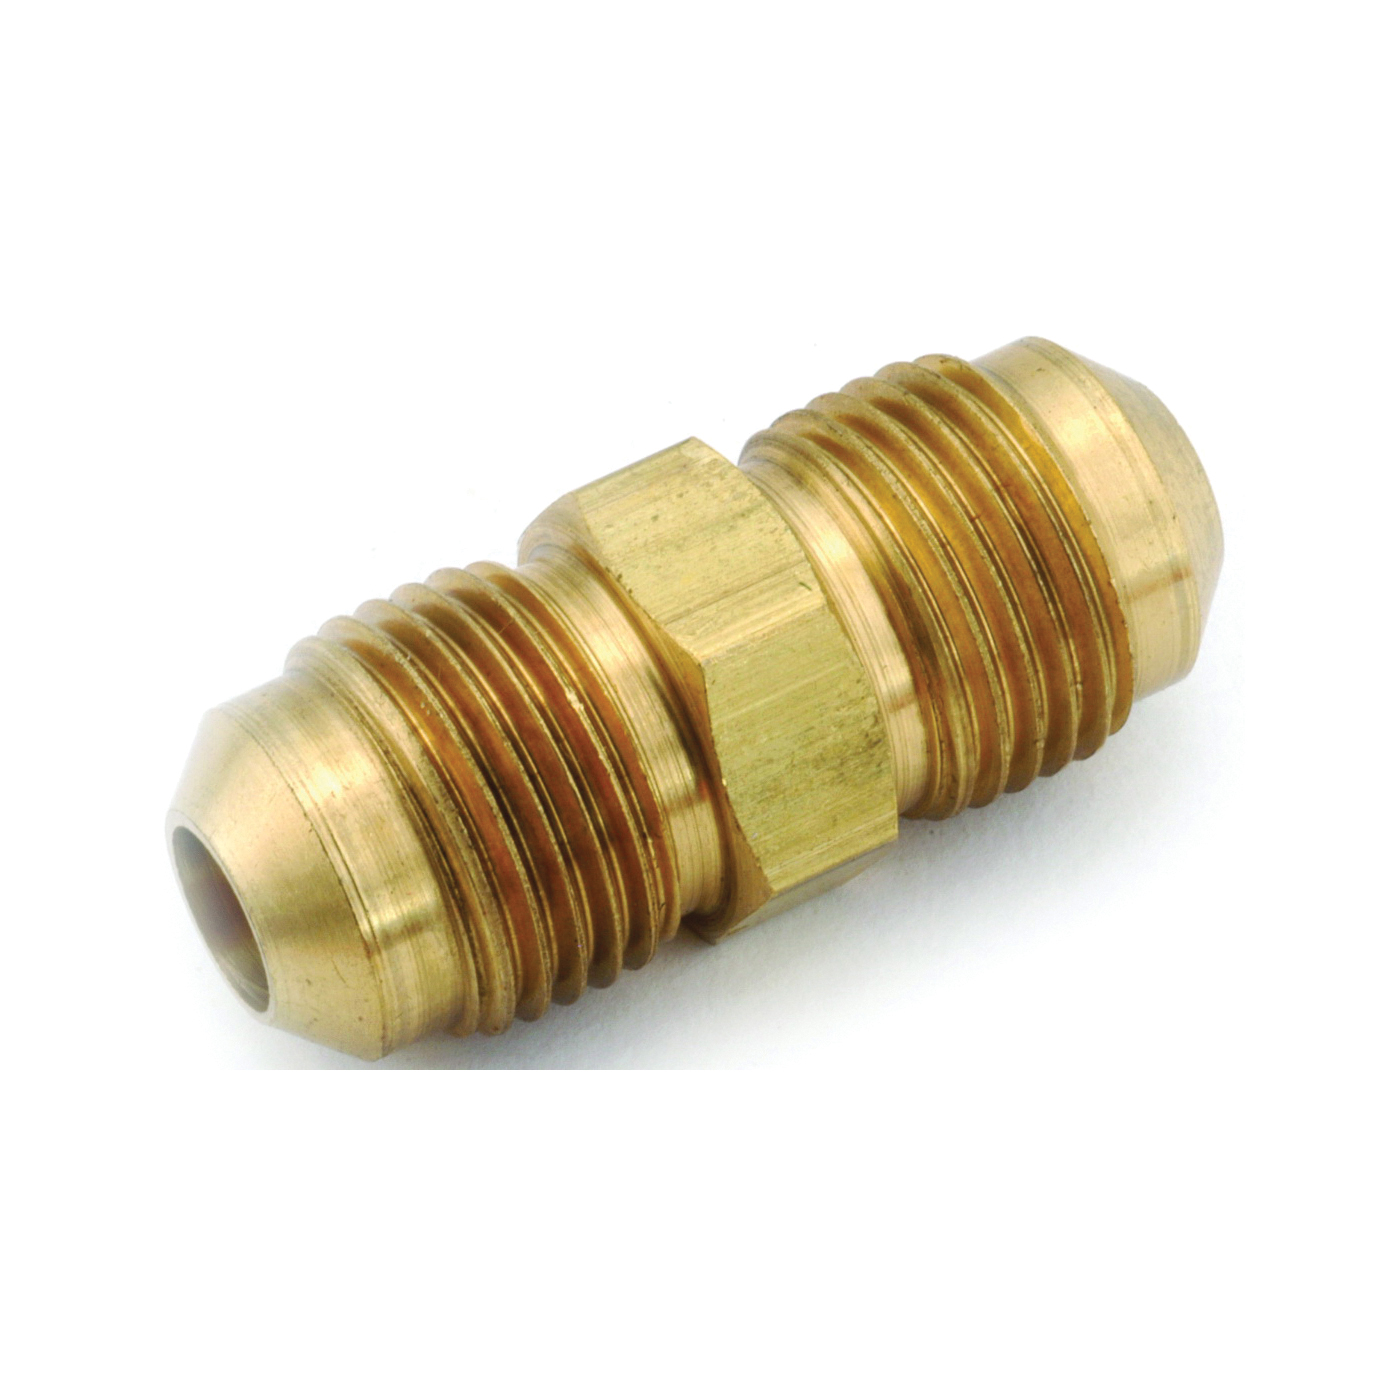 Anderson Metals 754042-06 Pipe Union, 3/8 in, Flare, Brass, 1000 psi Pressure - 1